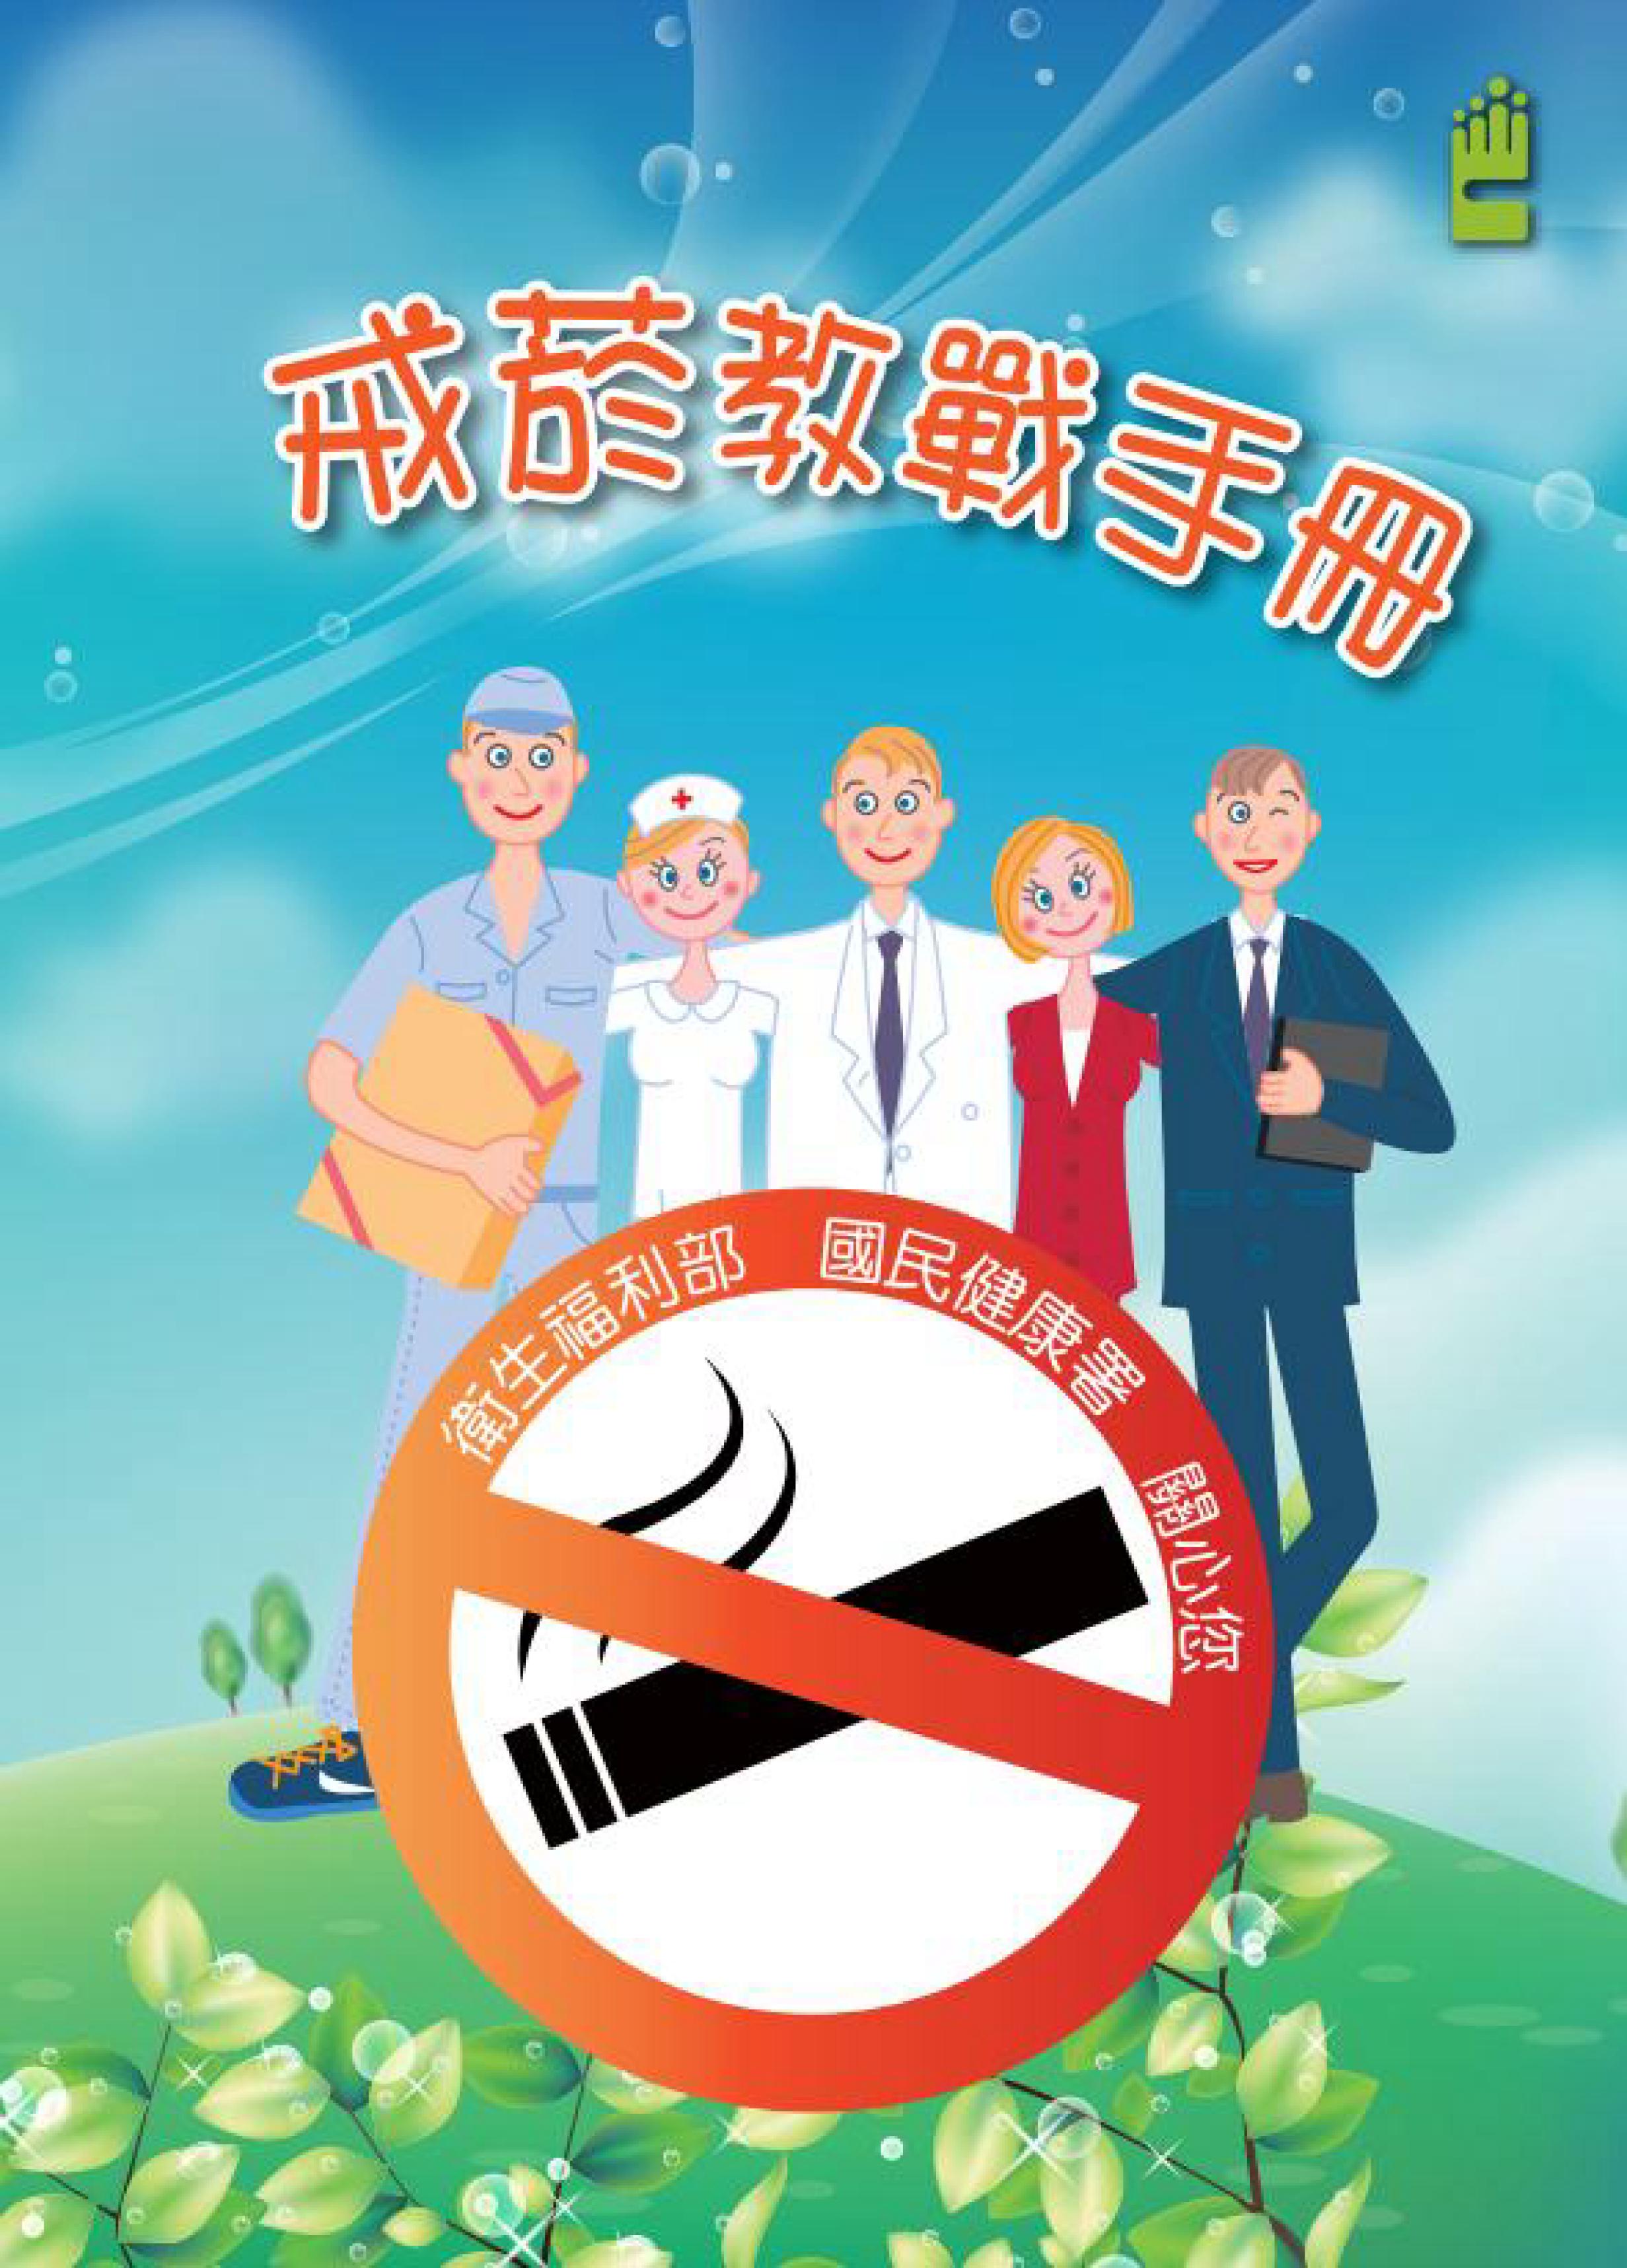 Hướng dẫn giảng dạy bỏ thuốc lá (Bộ Y tế phúc lợi cung cấp)